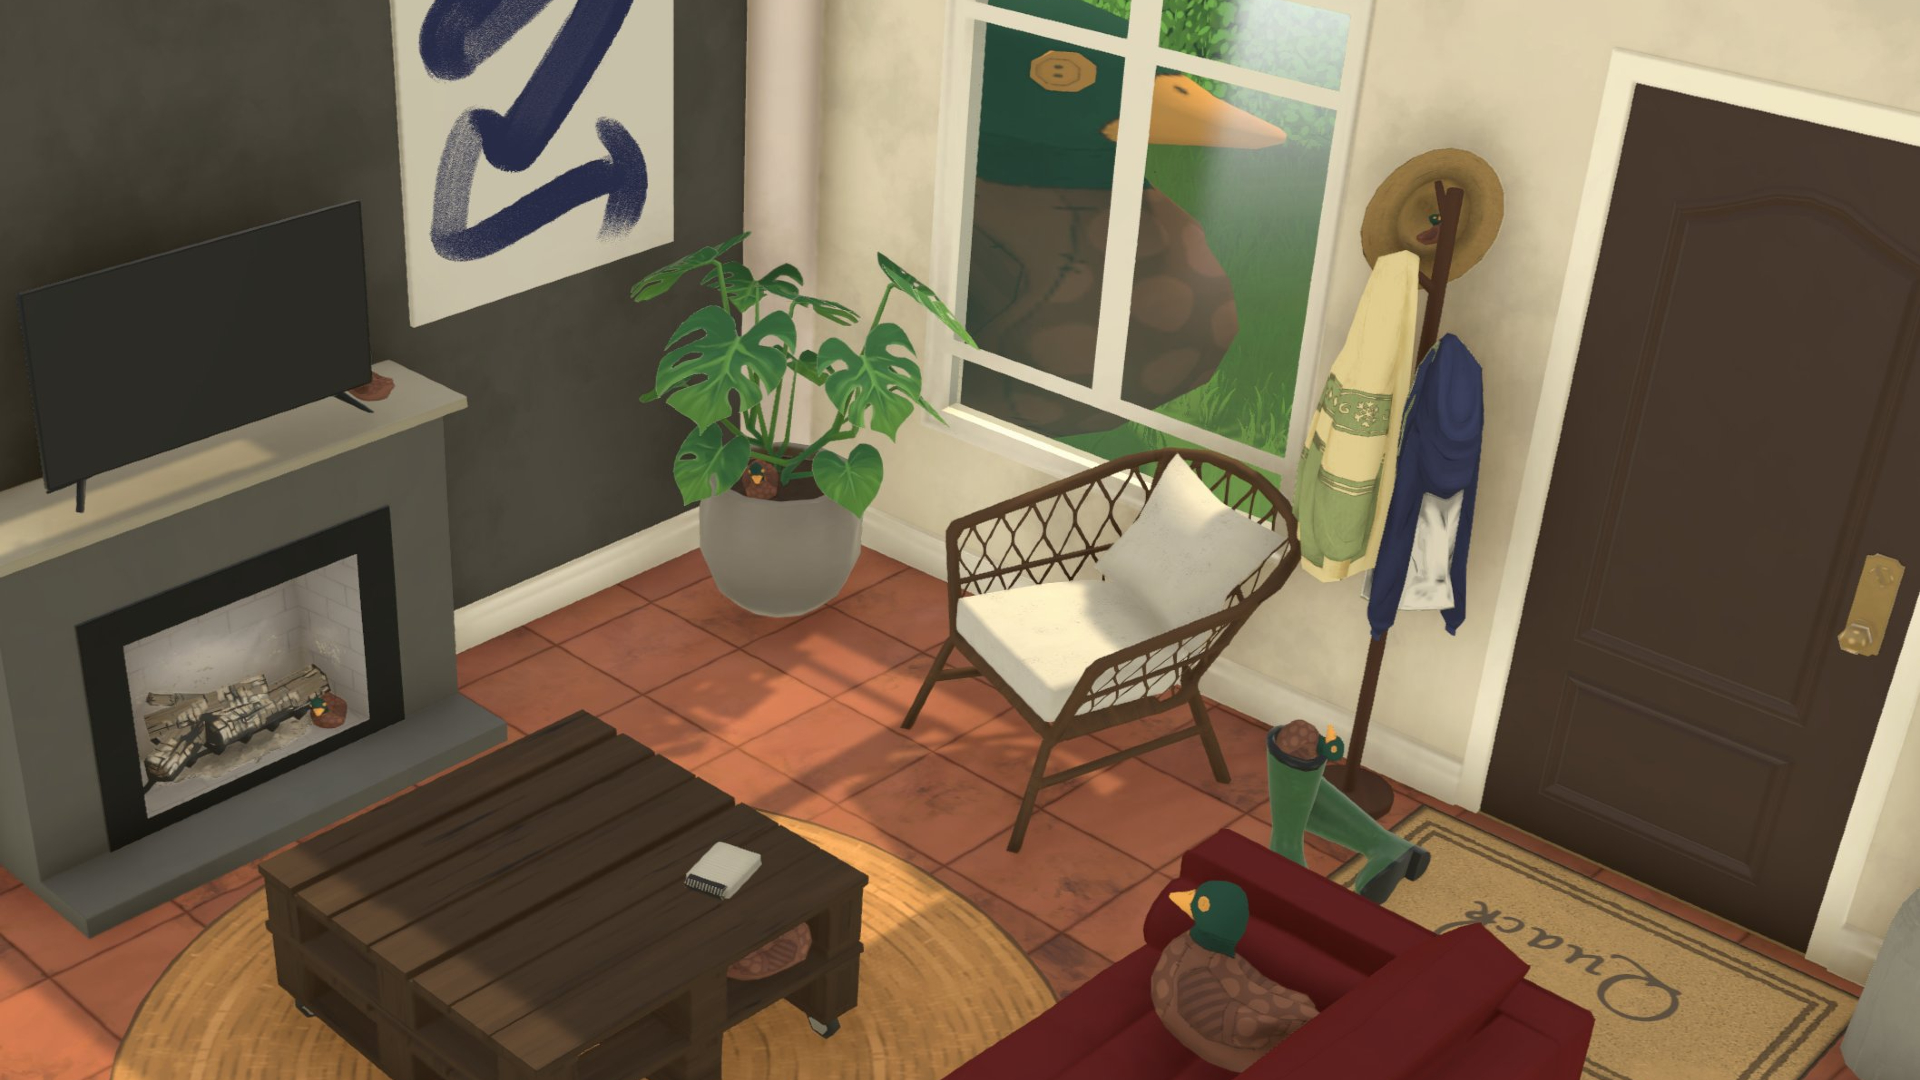 Ein Wohnzimmer im Spiel Paralives mit Kamin, Tisch, Sofa und zwei Entenplüschtieren.  Ein Plüsch liegt auf der Couch und der andere steht massiv am Fenster.